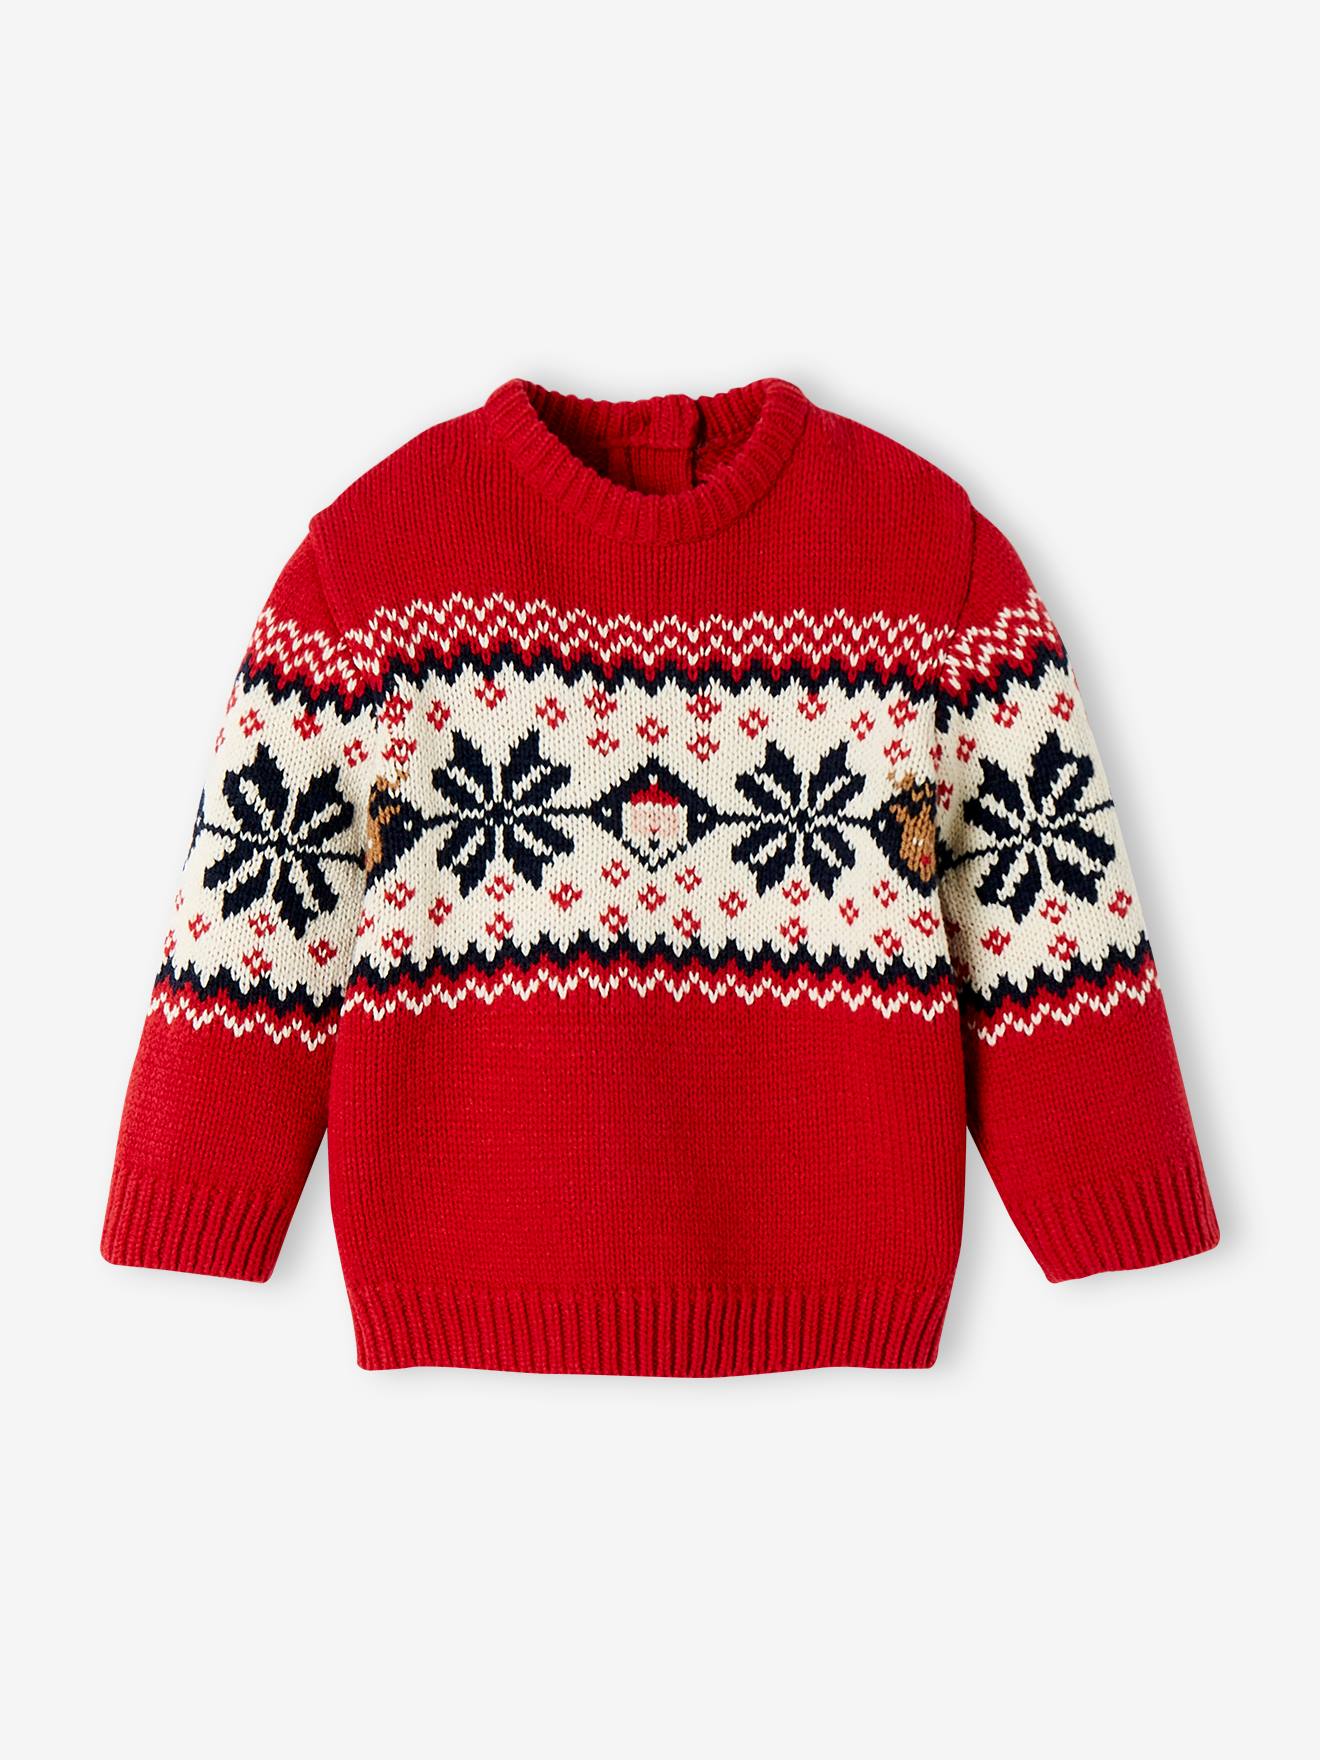 Vêtements de Noël bébé Elk Pullover Nouveau-né chandail tricot coton bébé  Meilleurs vêtements d'hiver pour enfants - Chine Décorations de Noël et  Décoration de Noël prix